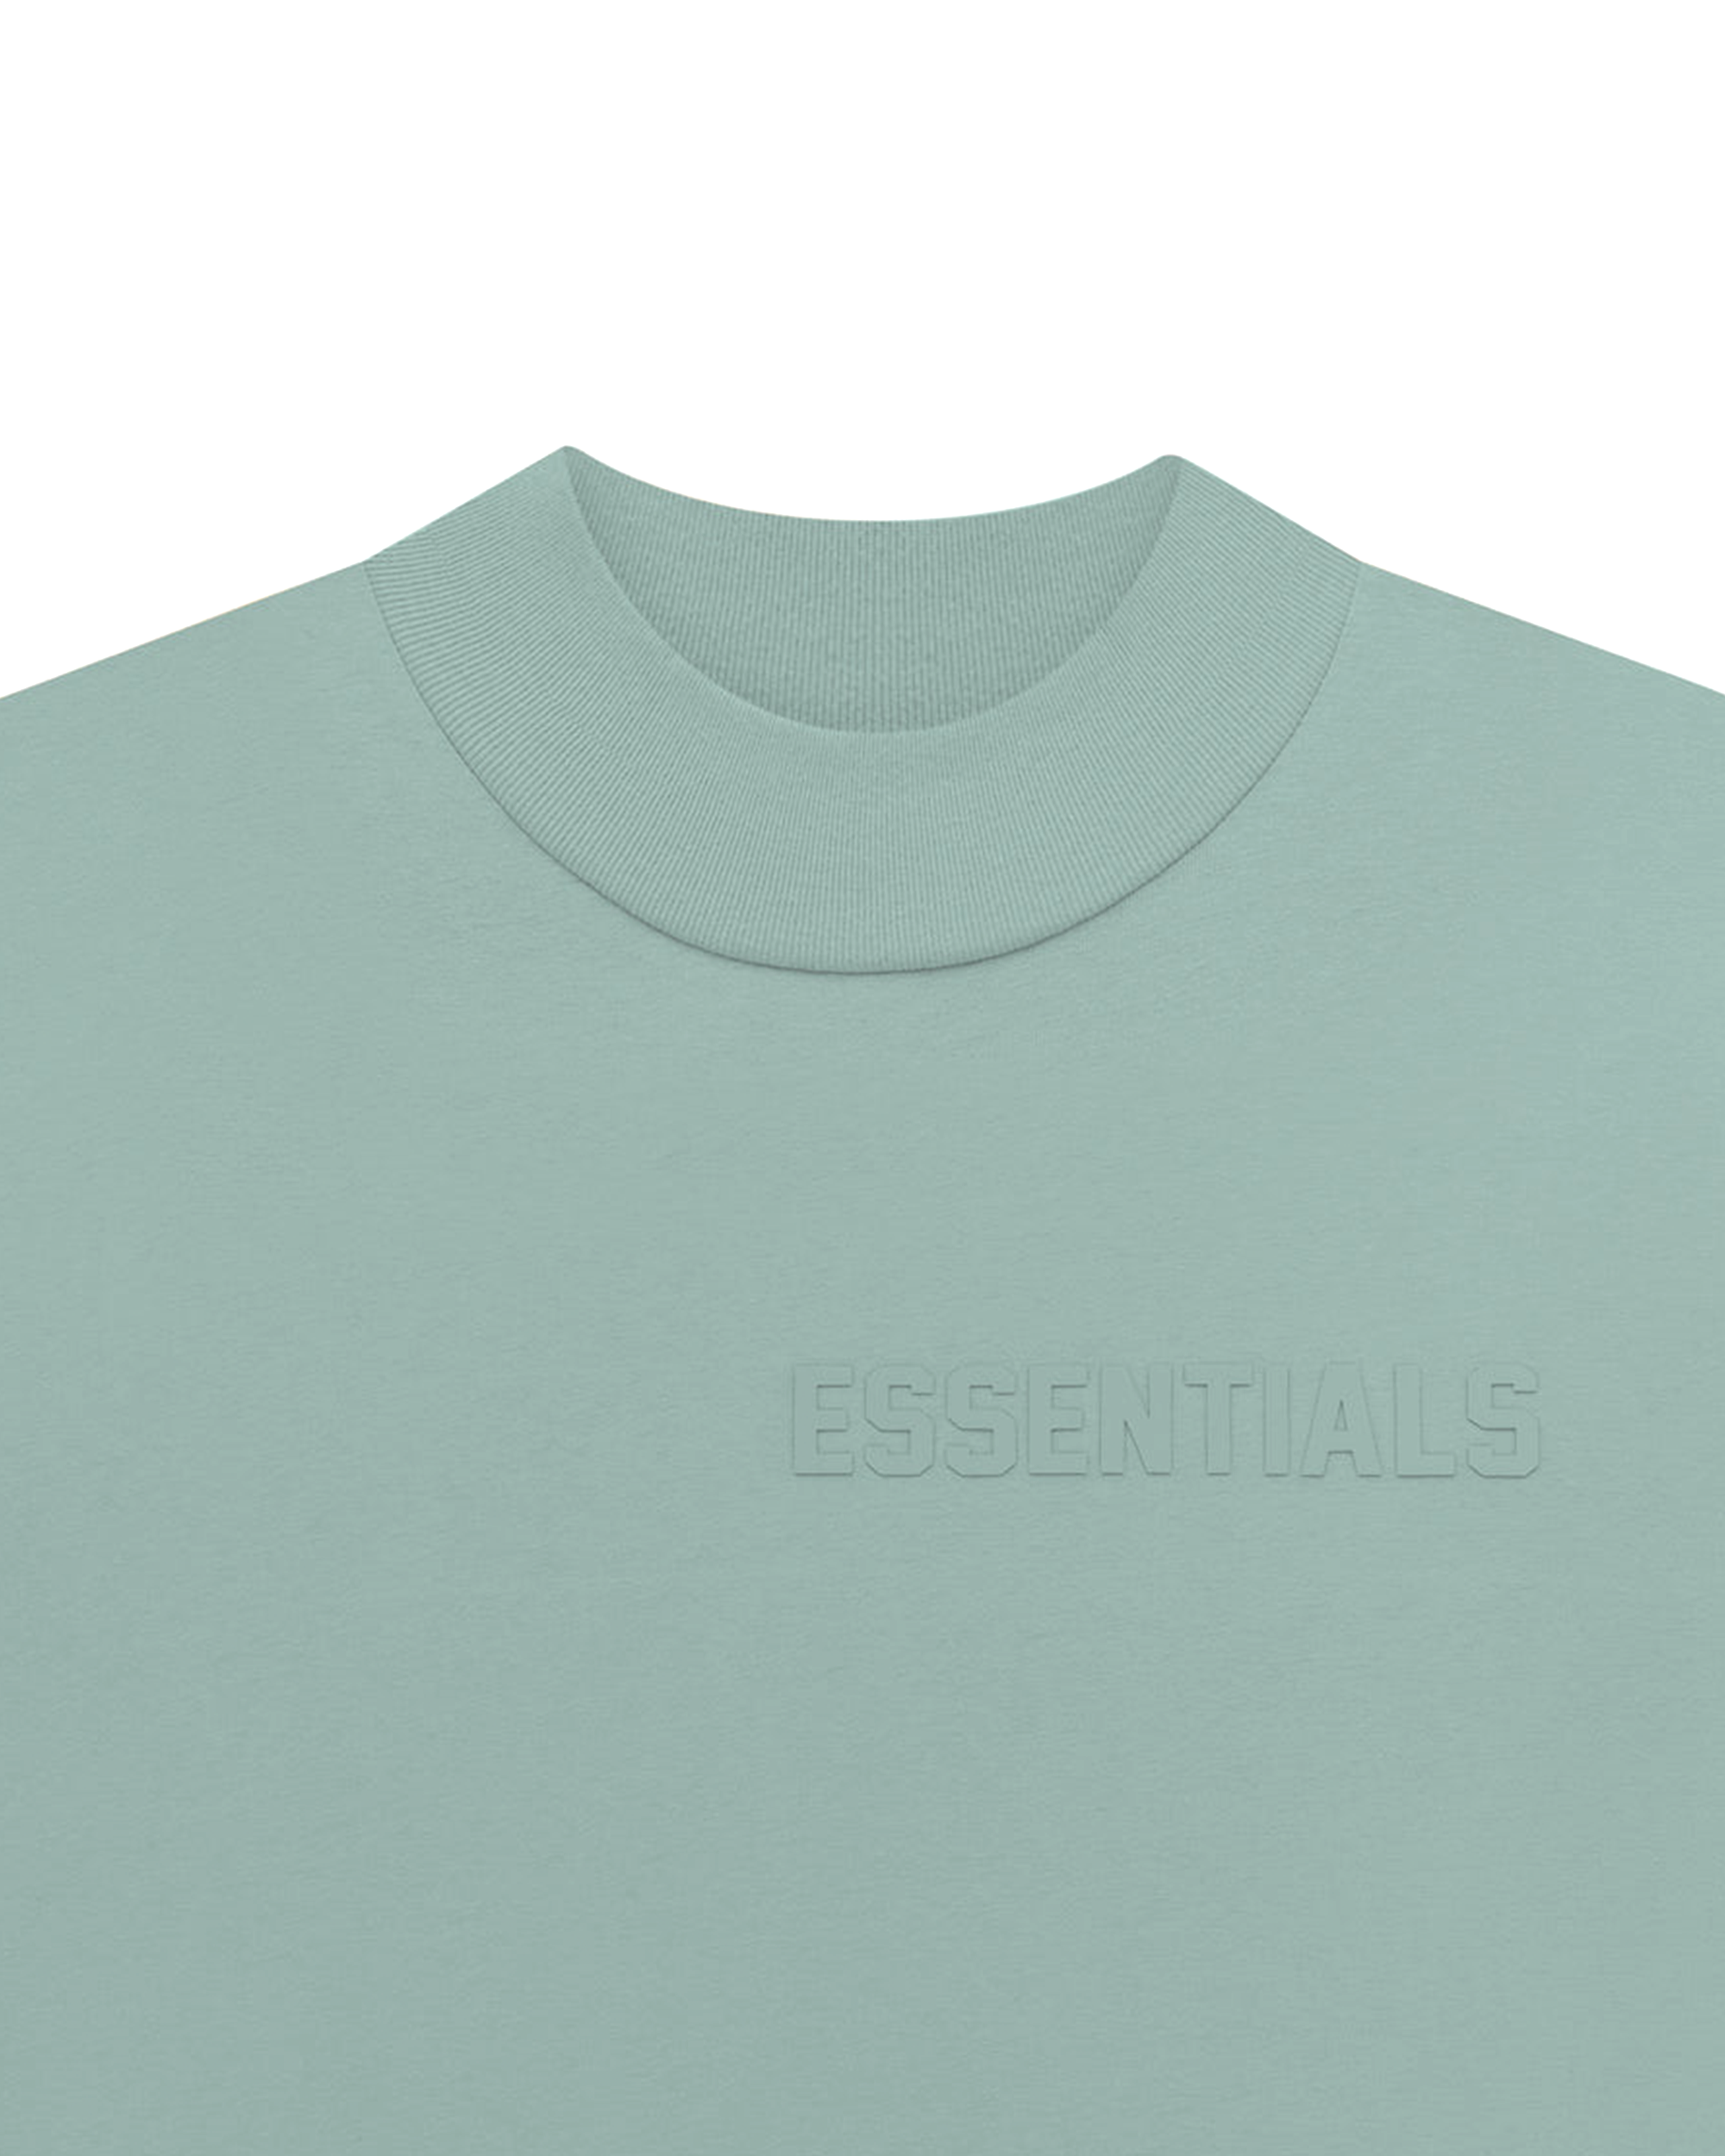 Essentials L/S T-Shirt - Sycamore